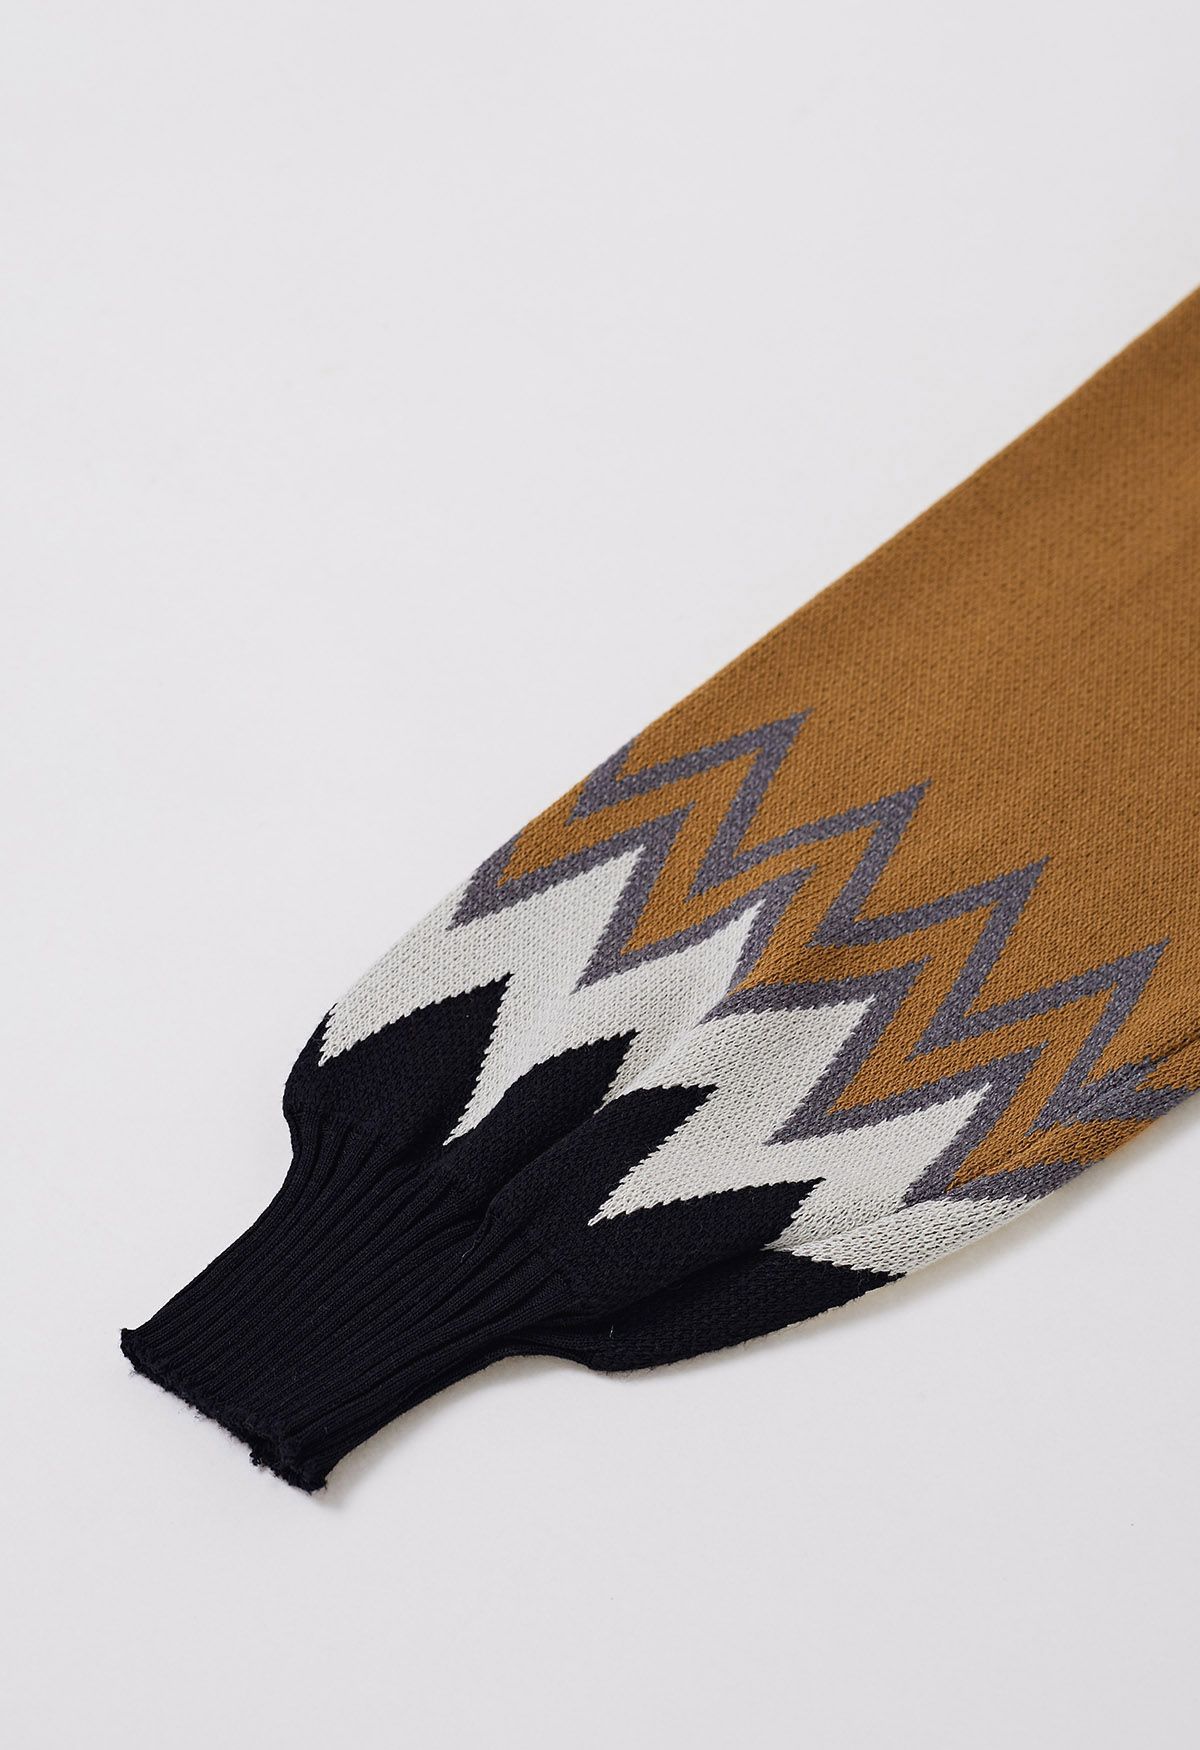 Suéter de punto en zigzag con bloques de color